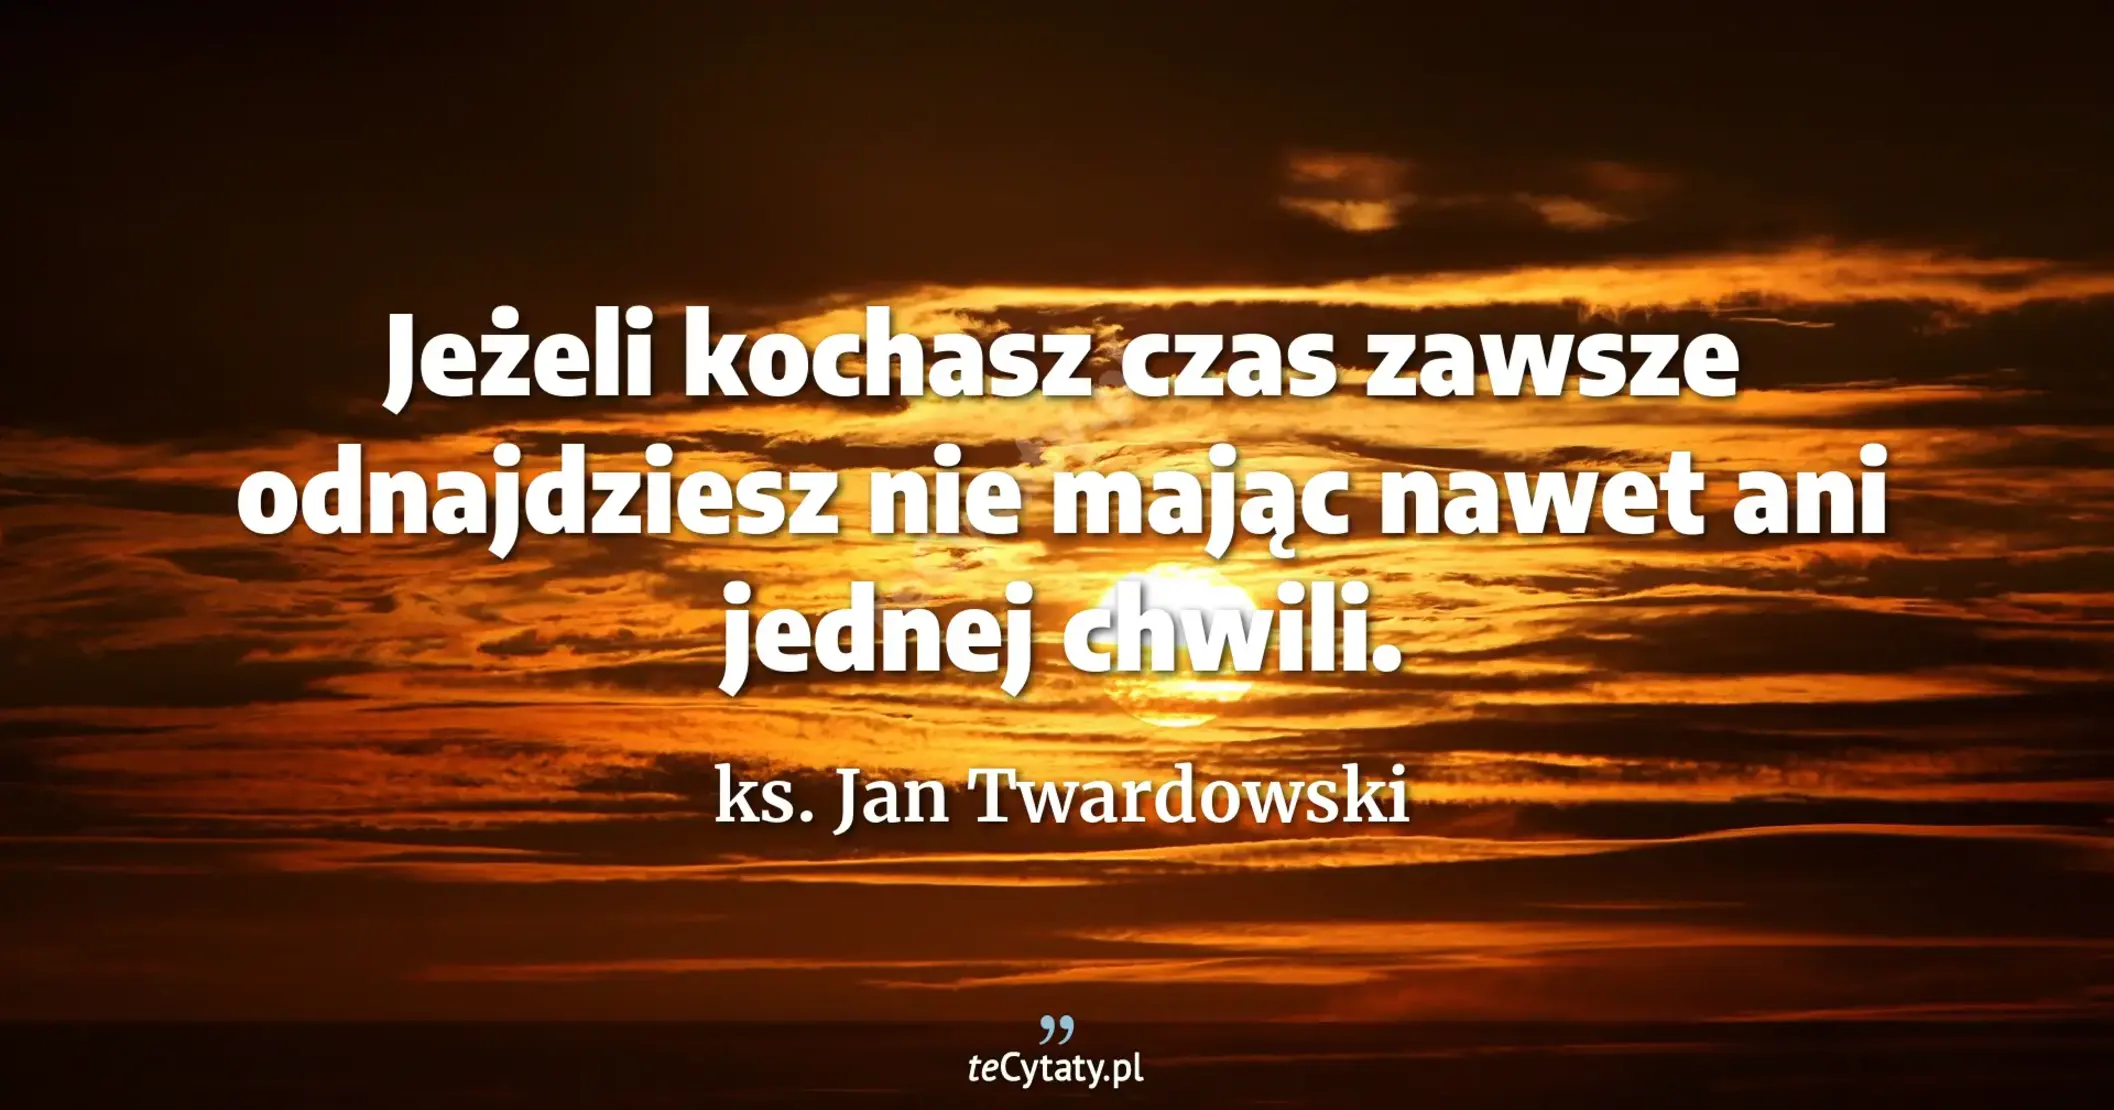 Jeżeli kochasz <br> czas zawsze odnajdziesz <br> nie mając nawet ani jednej chwili. - ks. Jan Twardowski